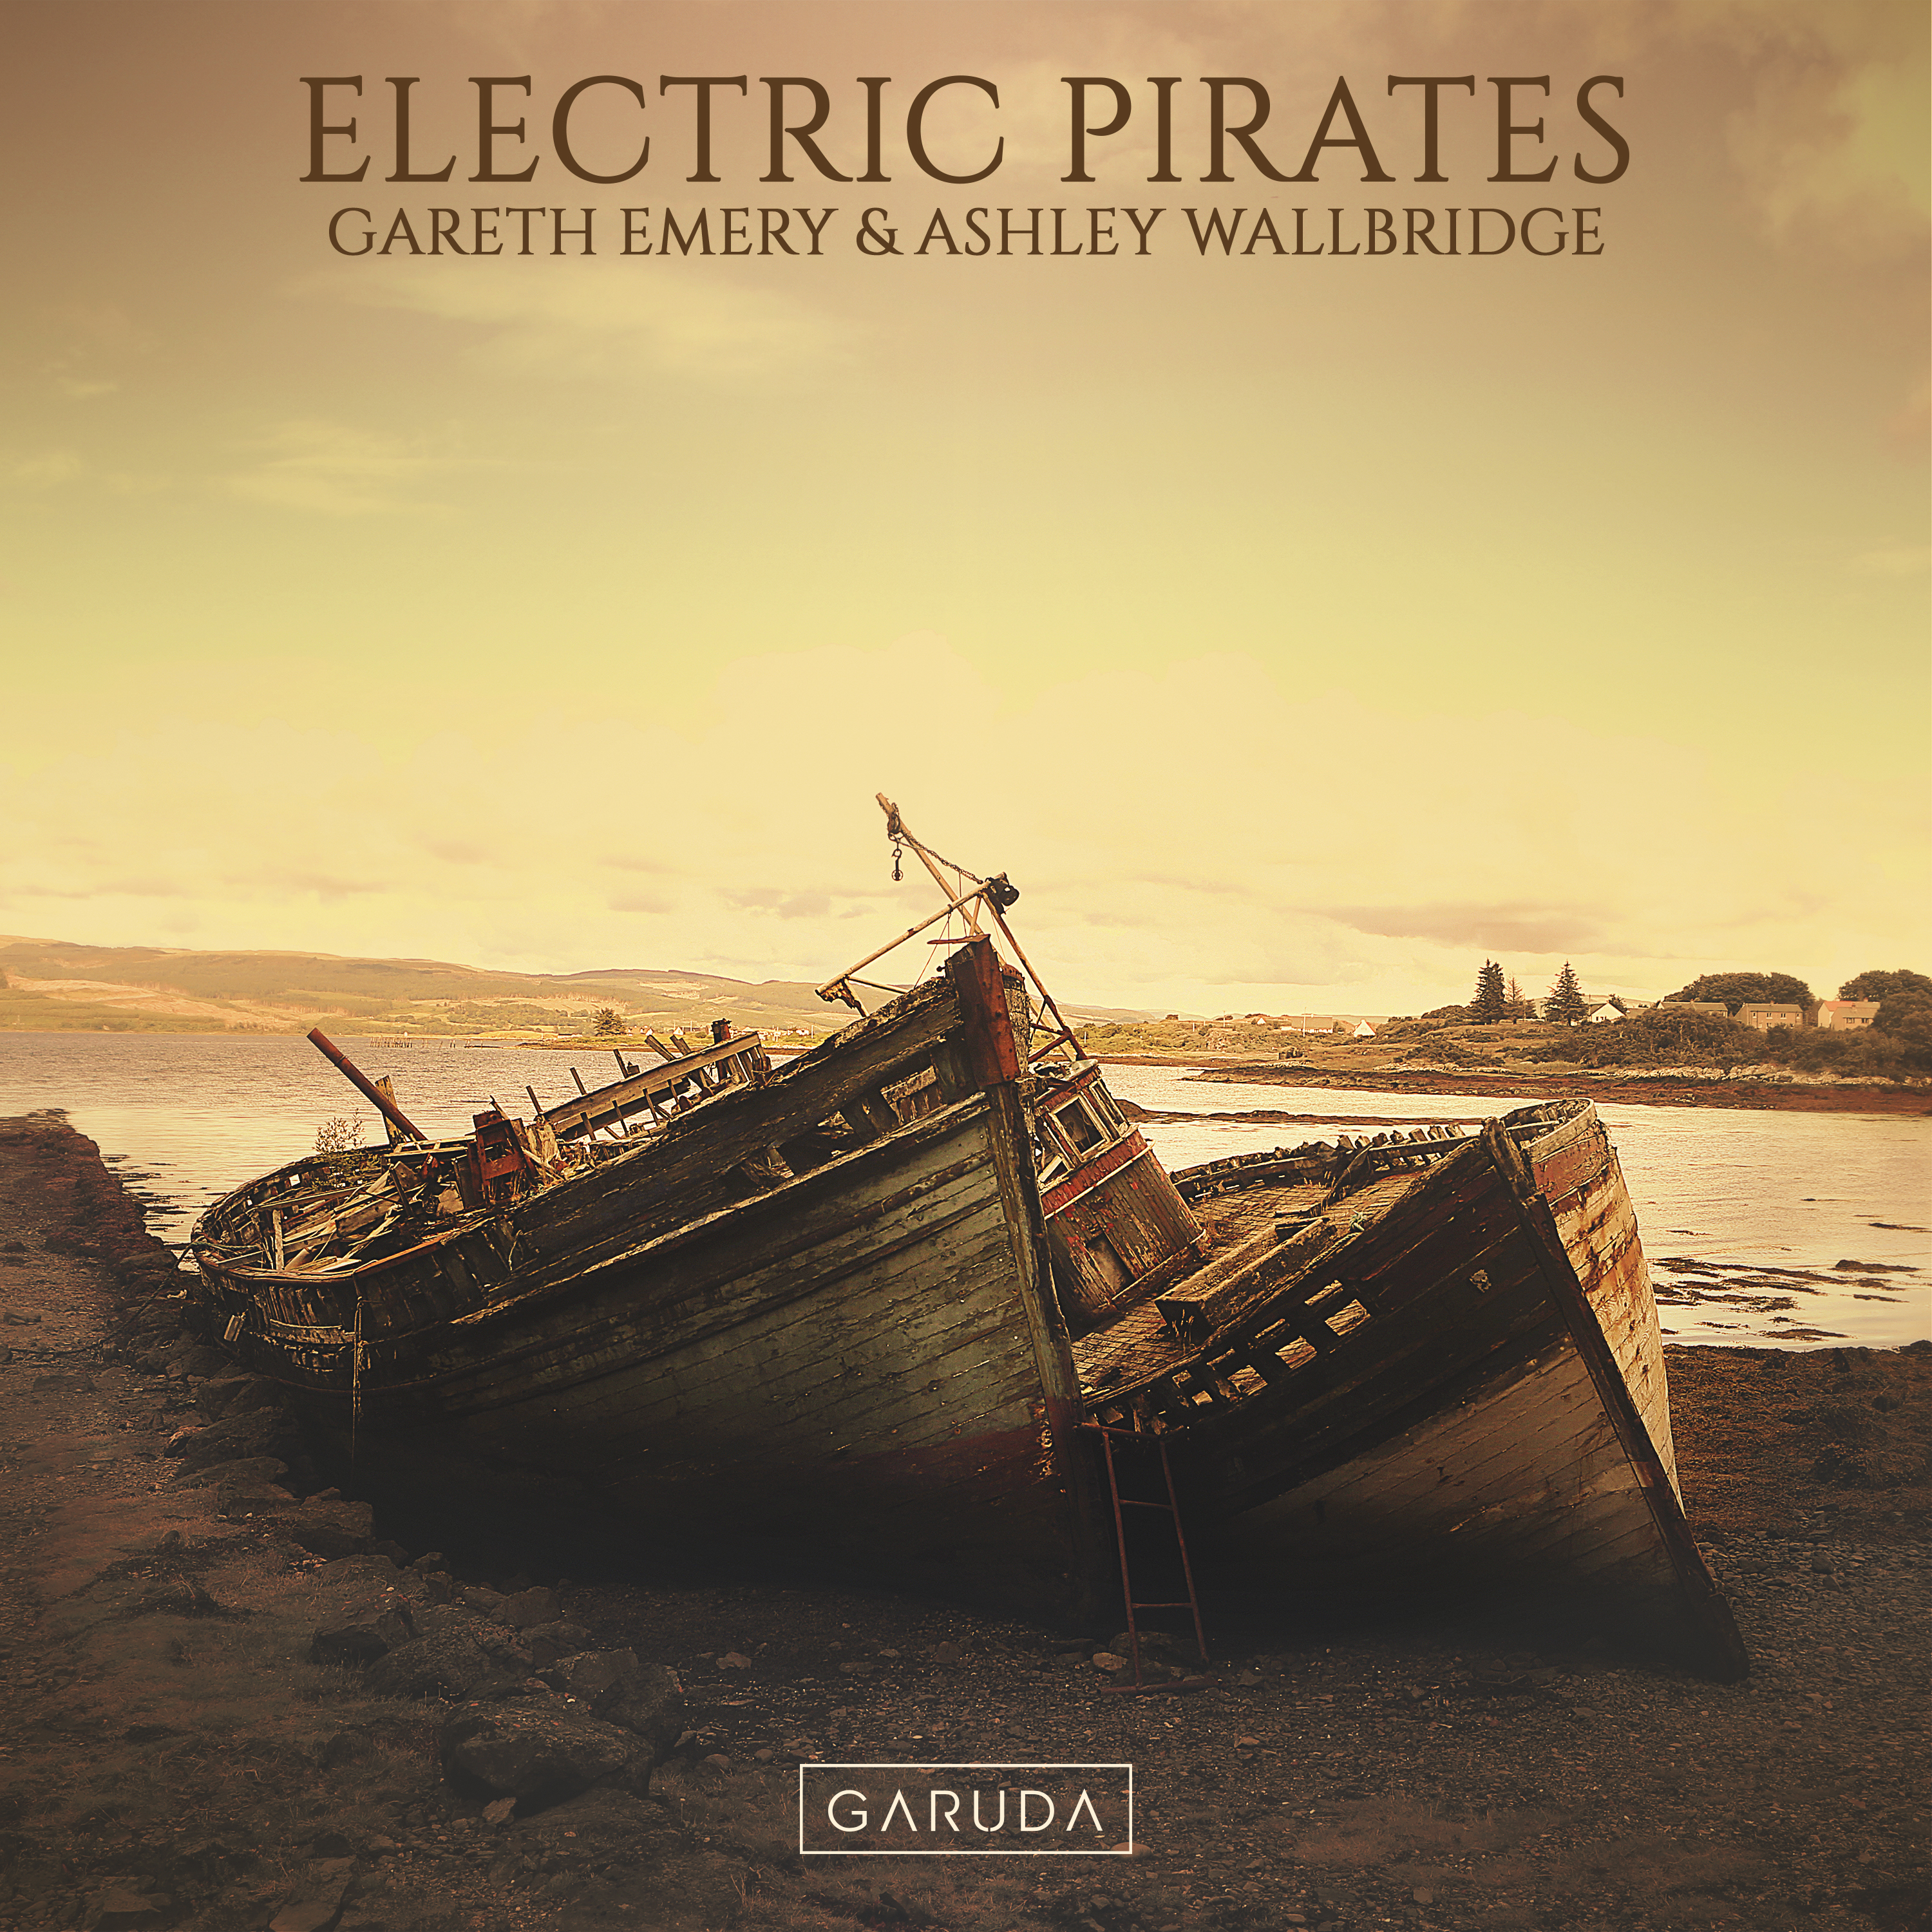 Gareth Emery & Ashley Wallbridge — Electric Pirates cover artwork